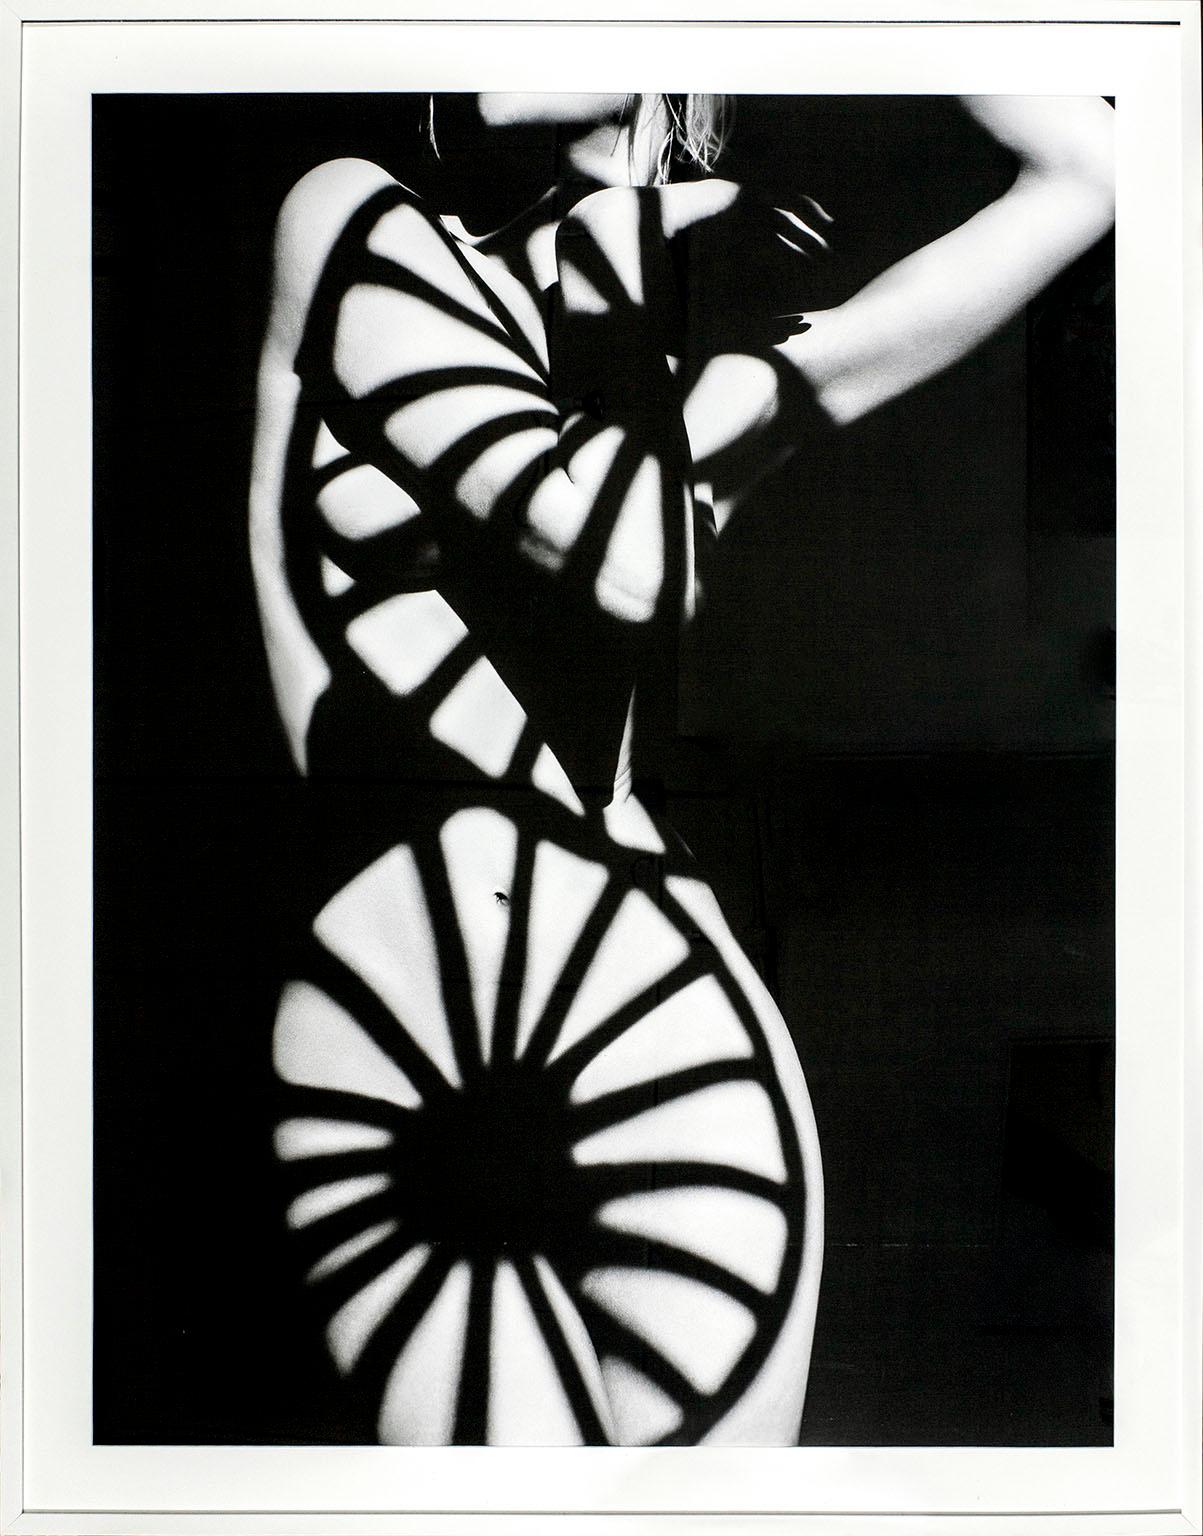 "Wagon Wheel" acrylique avec papier à base de fibre par le photographe de mode Greg Lotus. Image en noir et blanc d'un nu féminin couvert par des ombres parfaitement positionnées, projetées par des roues de wagons. D'une édition de 25 exemplaires.